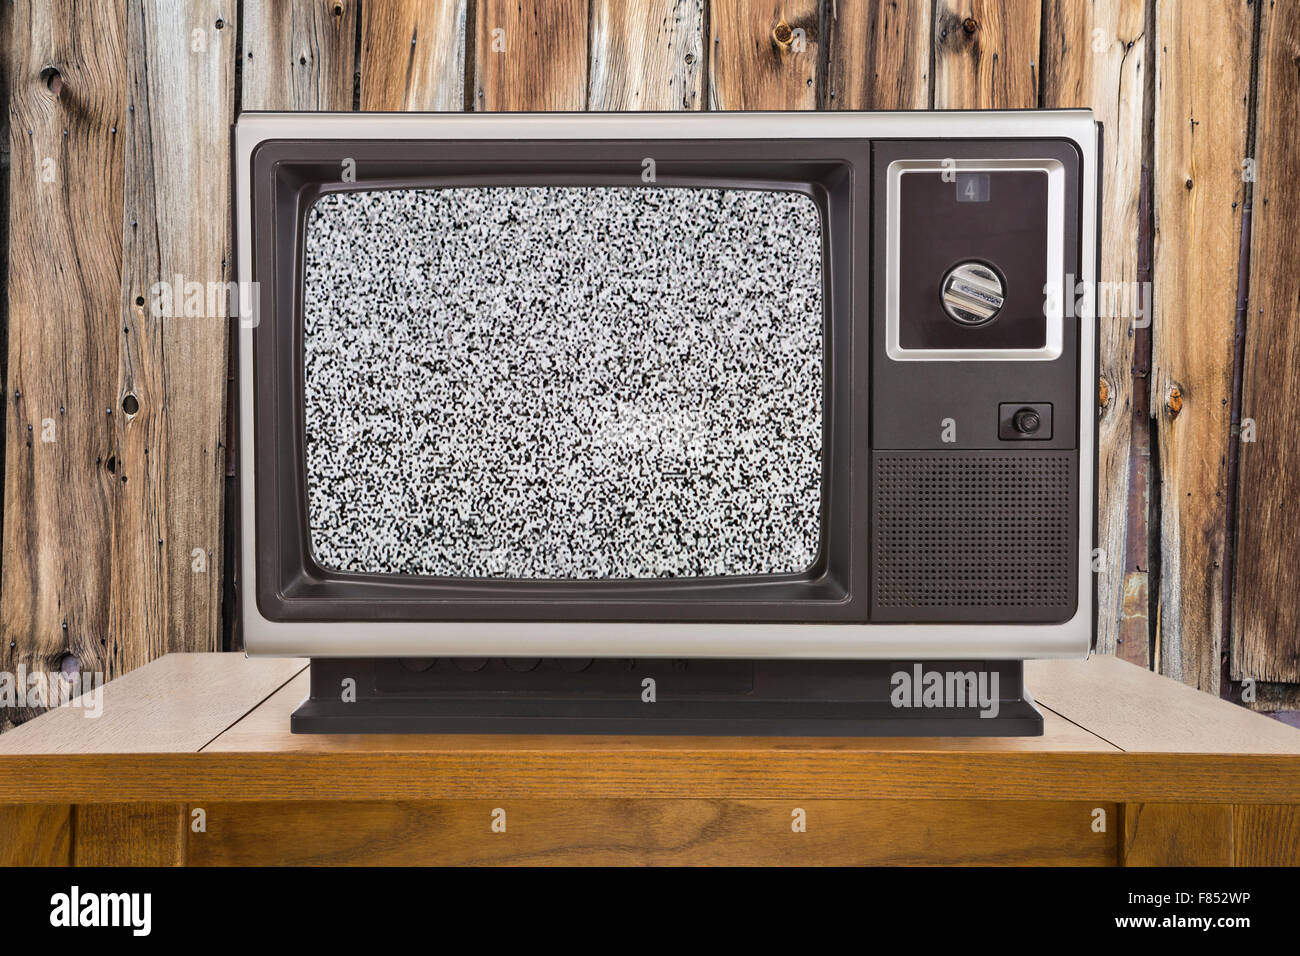 Vieille télévision portable avec écran statique et mur en bois rustique. Banque D'Images